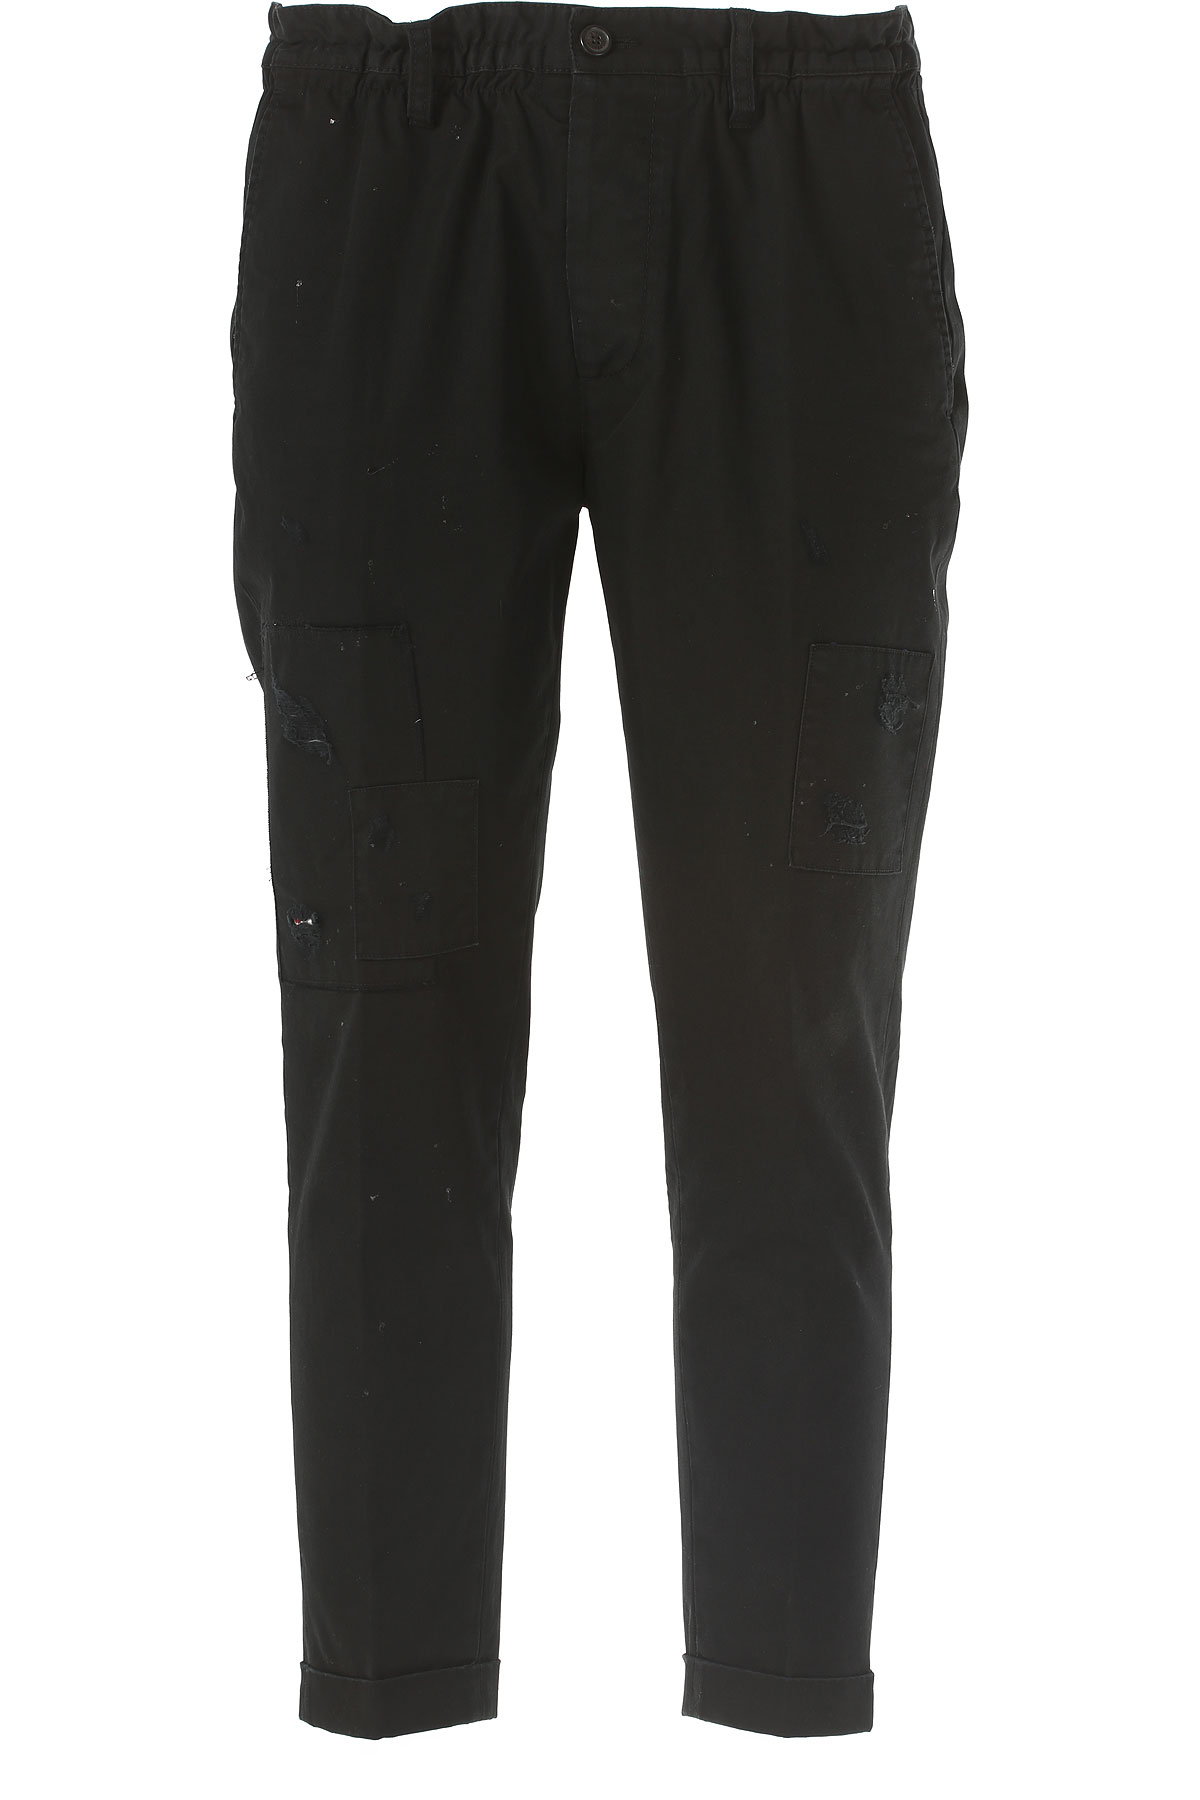 Dsquared Pantalon Homme Outlet, Noir, Coton, 2017, 44 50